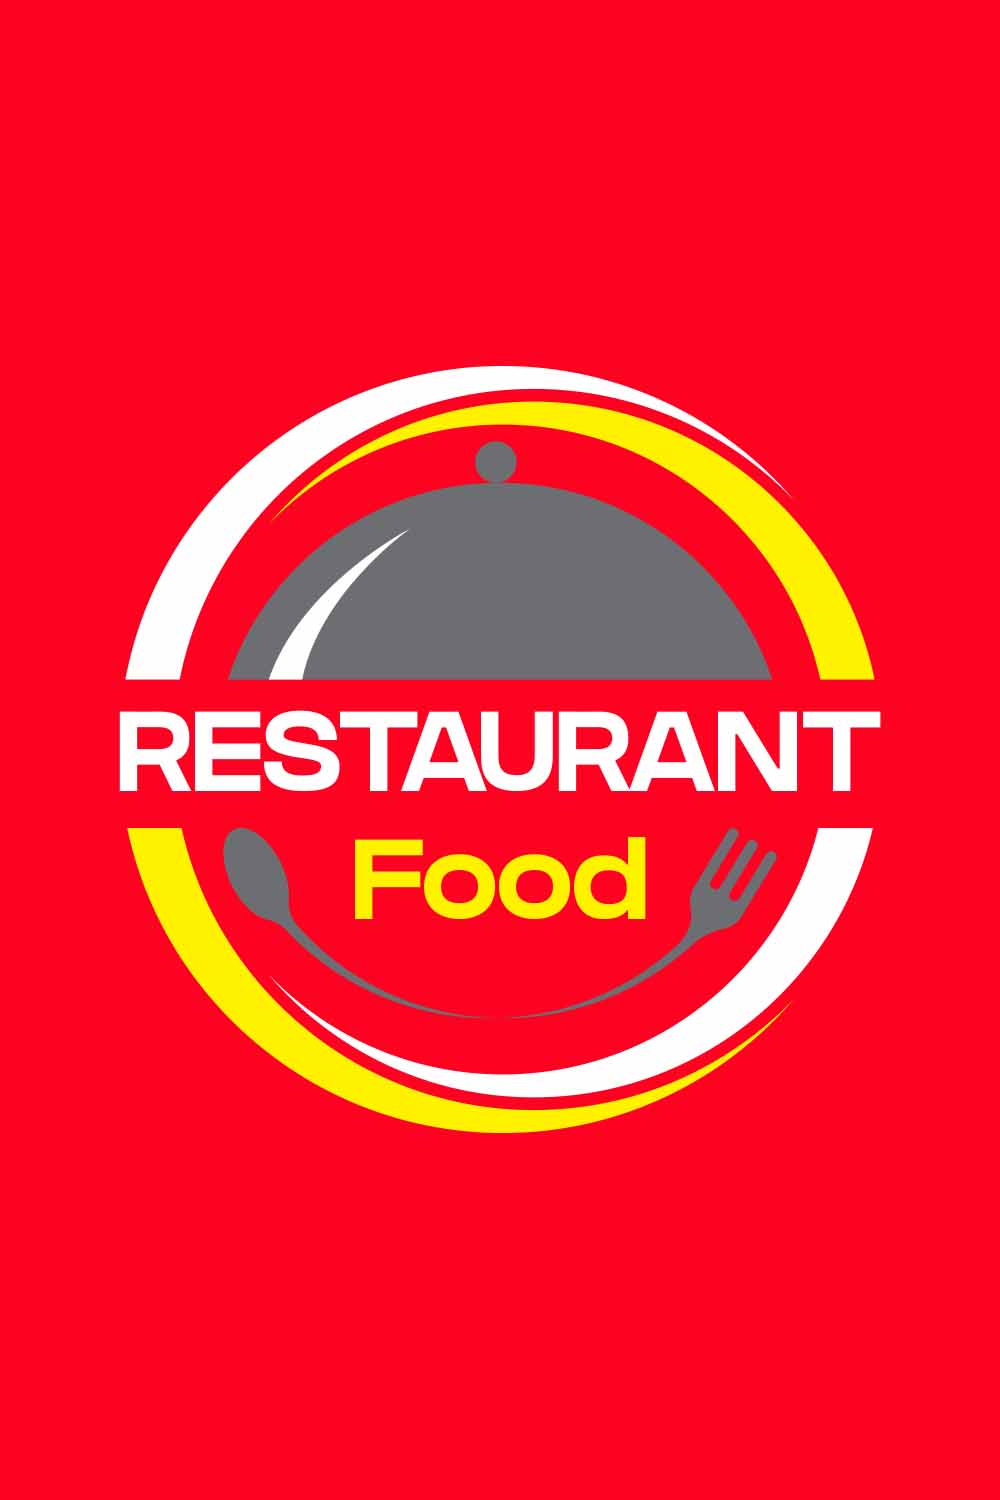 Restaurant Editable Vector Logo Design pinterest image.